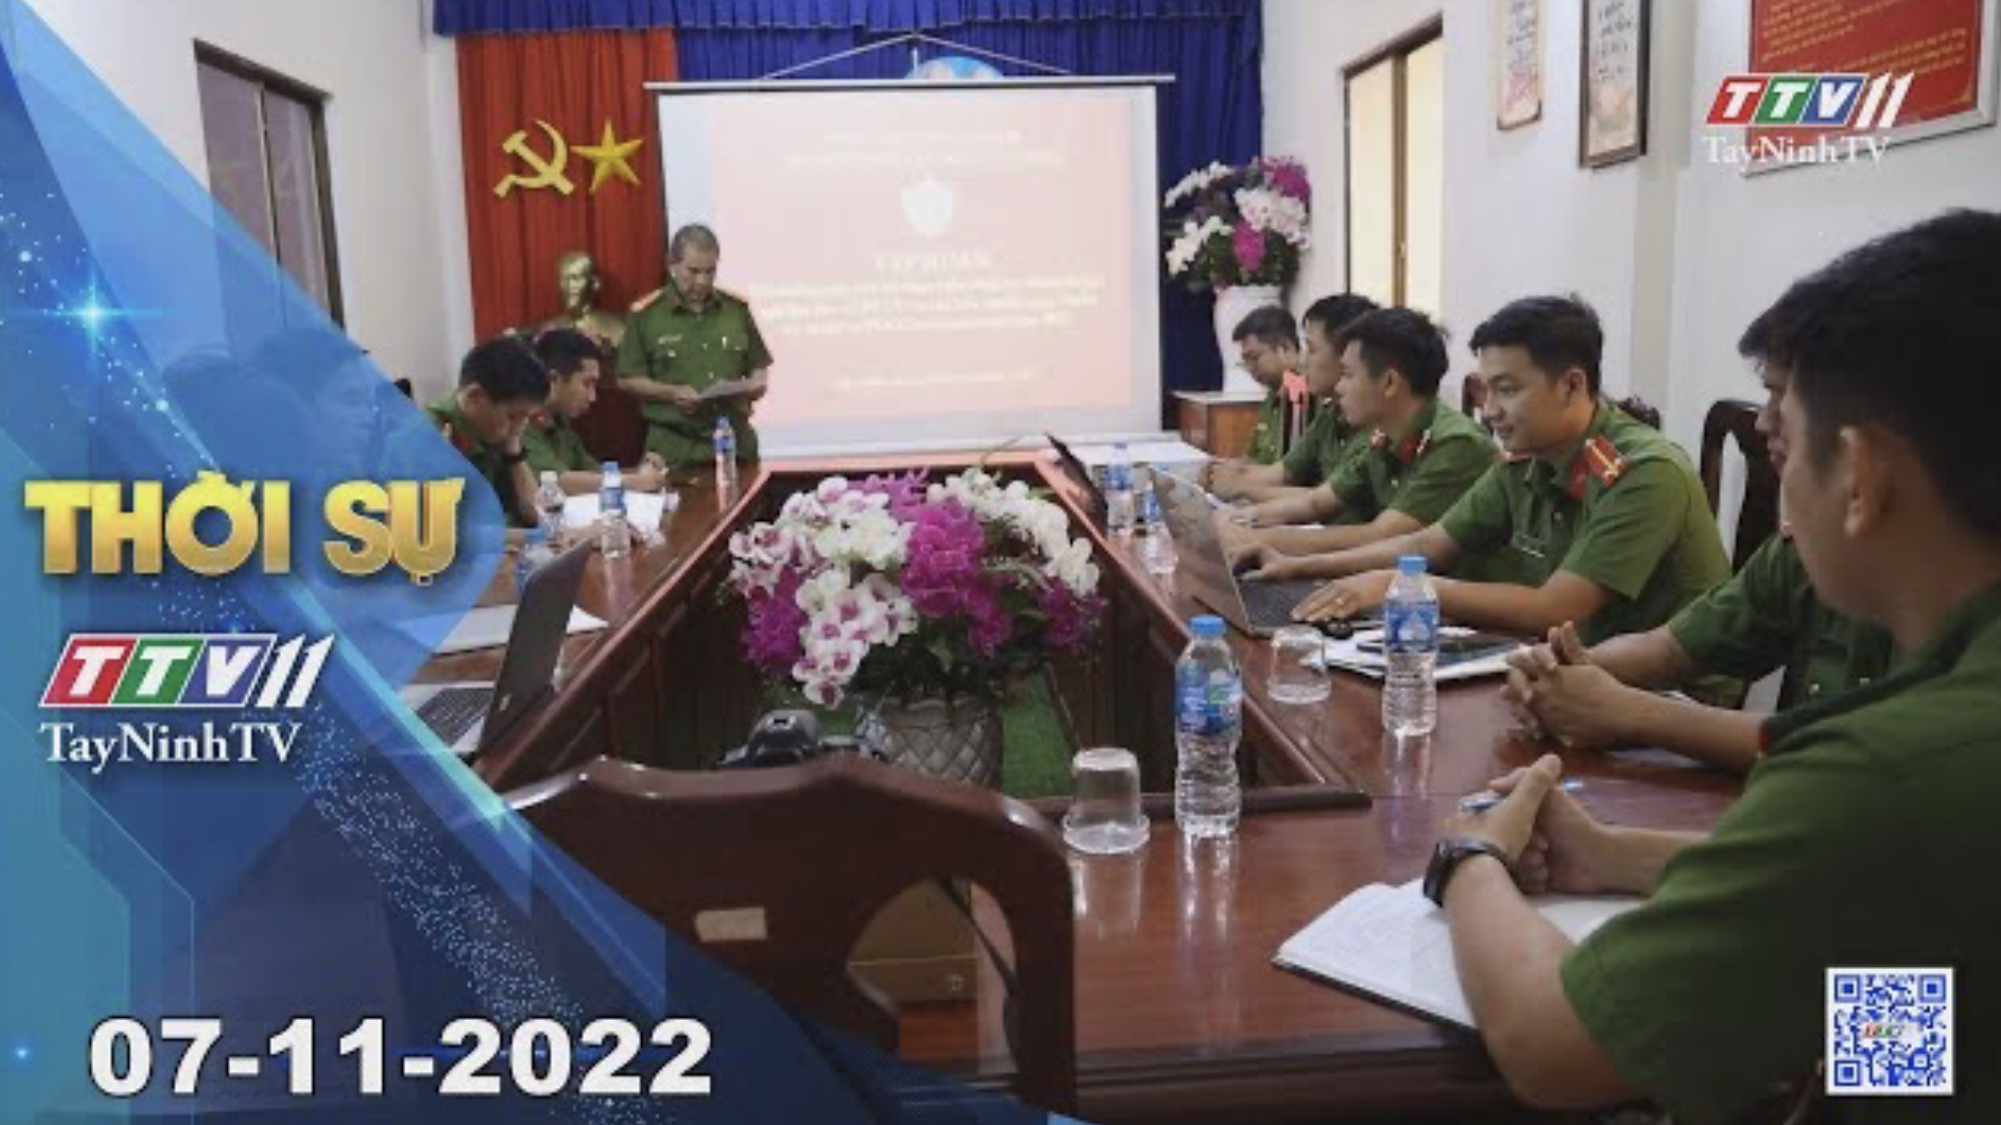 Thời sự Tây Ninh 07-11-2022 | Tin tức hôm nay | TayNinhTV